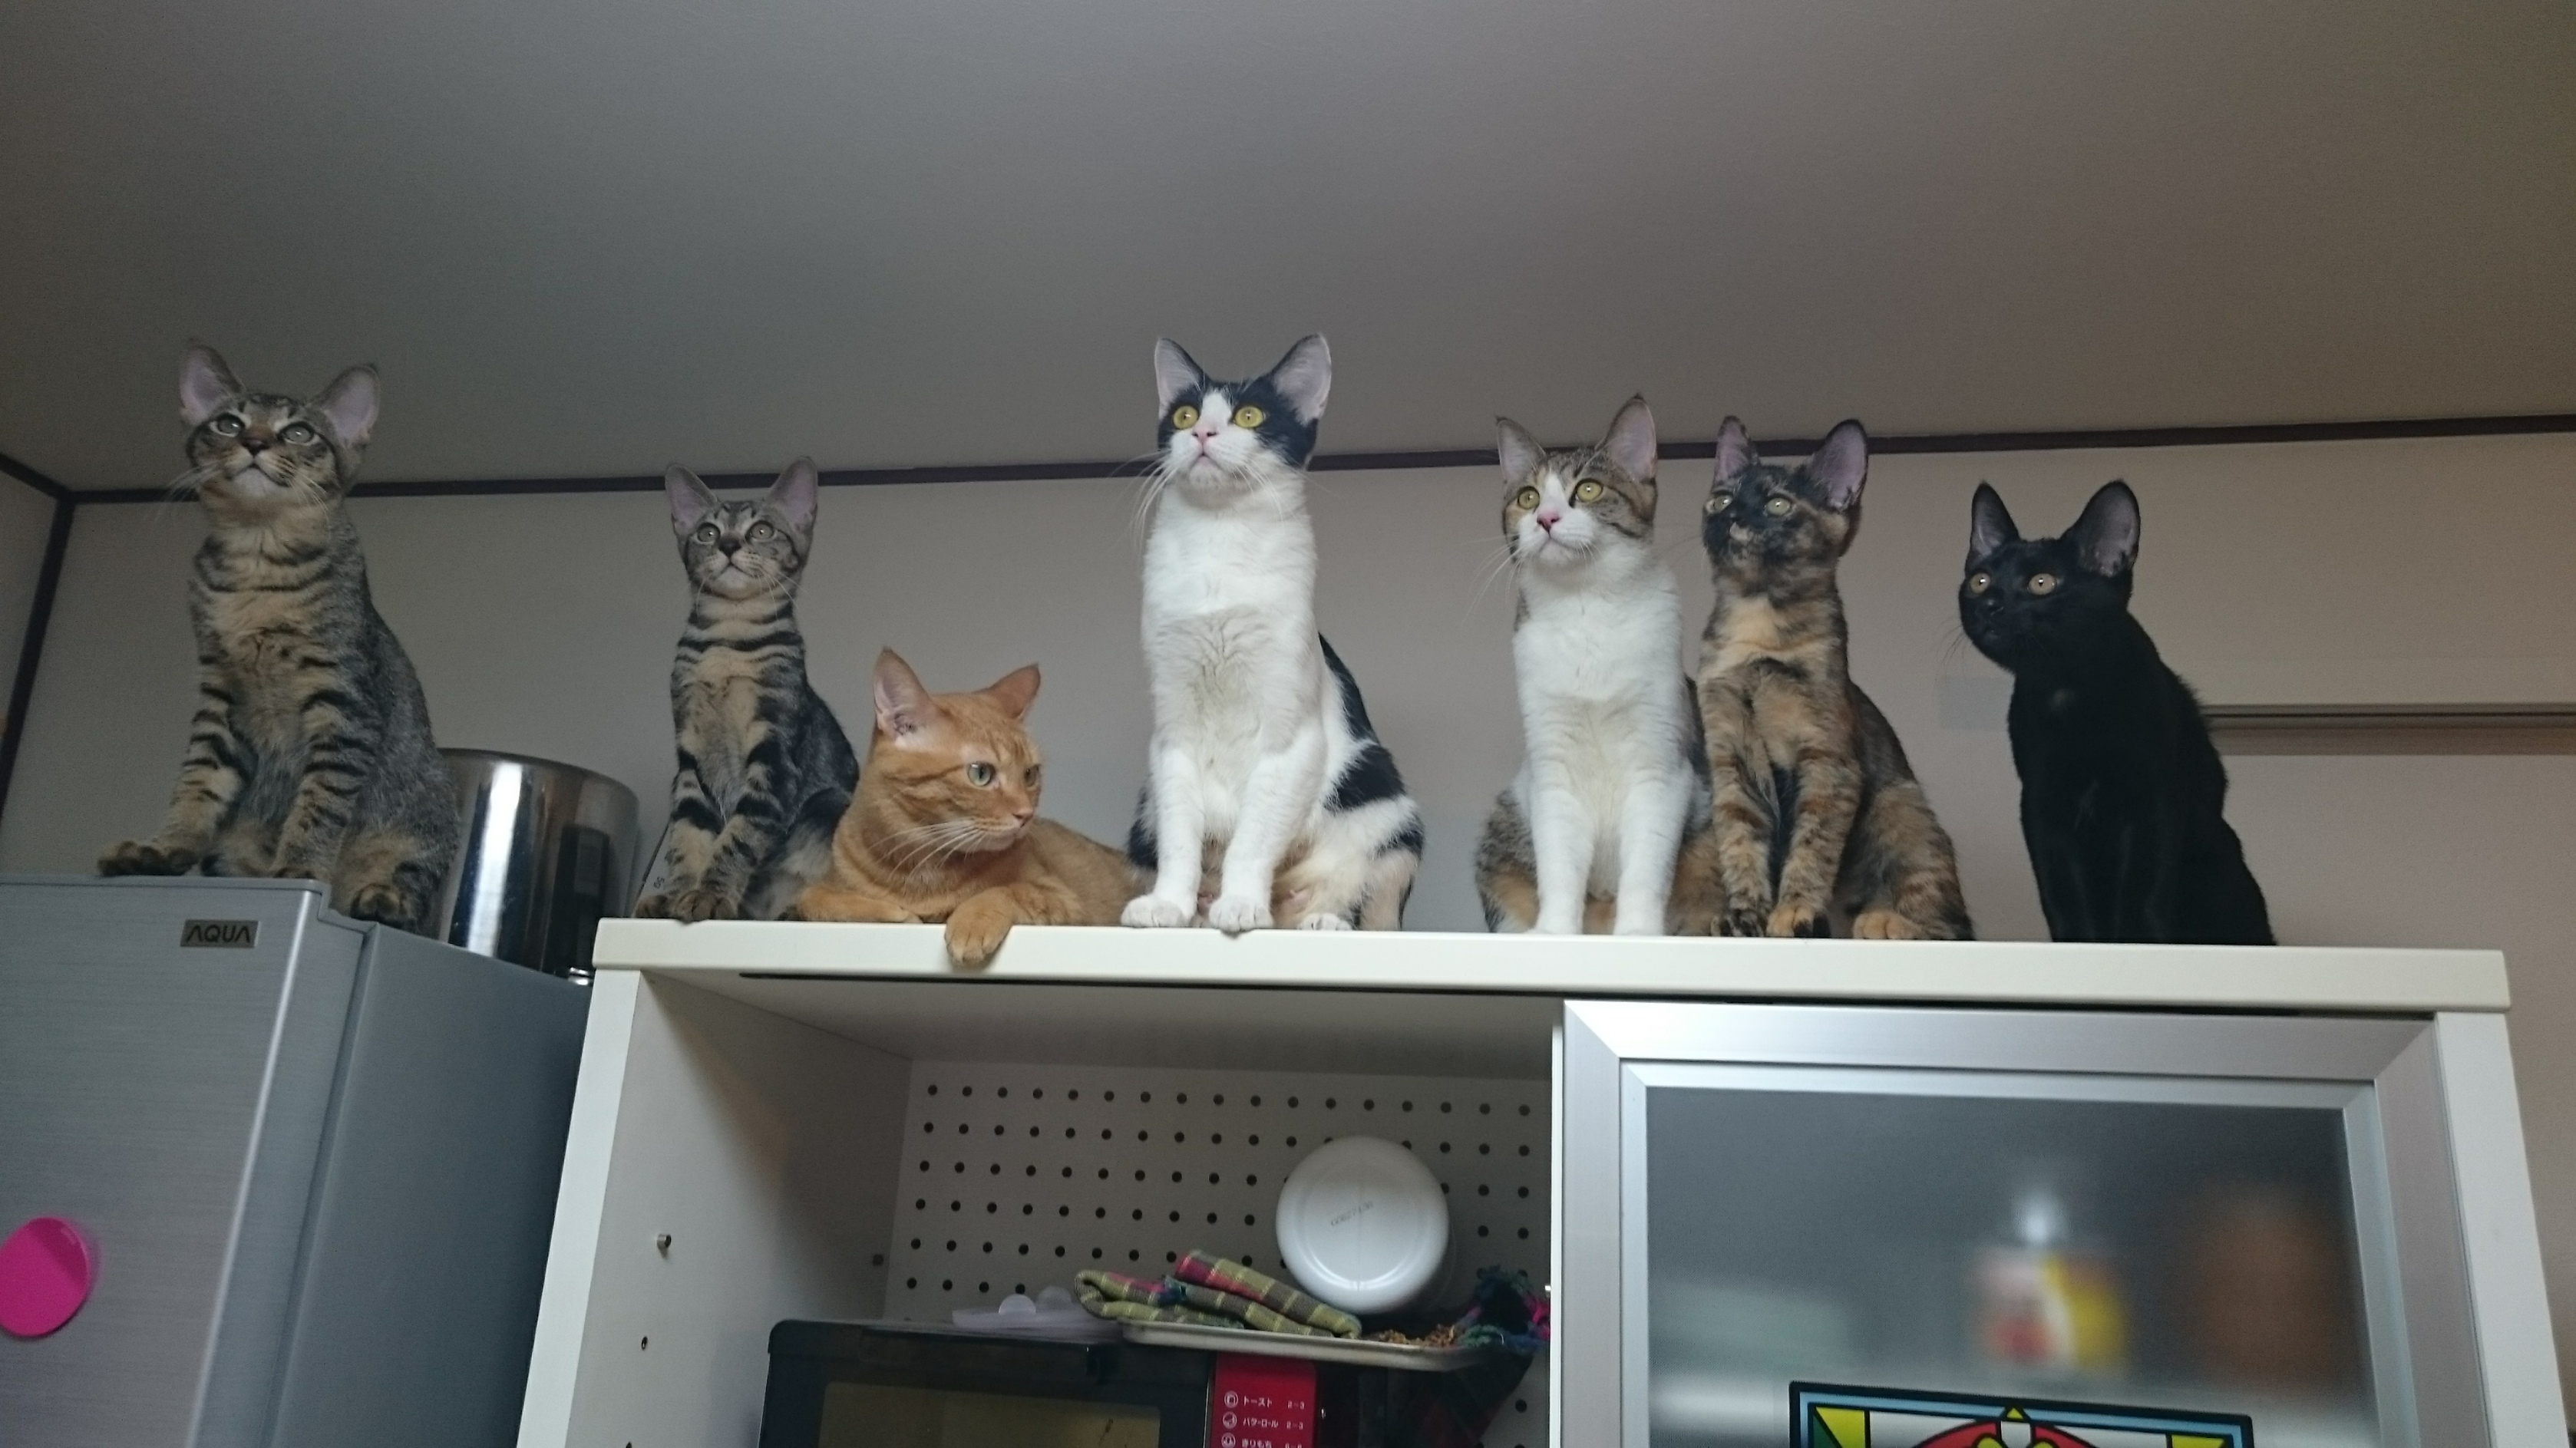 日本猫のオスとメス 種類によって性格が違う 我が家の猫7匹を比べてみた ネコチラブログ